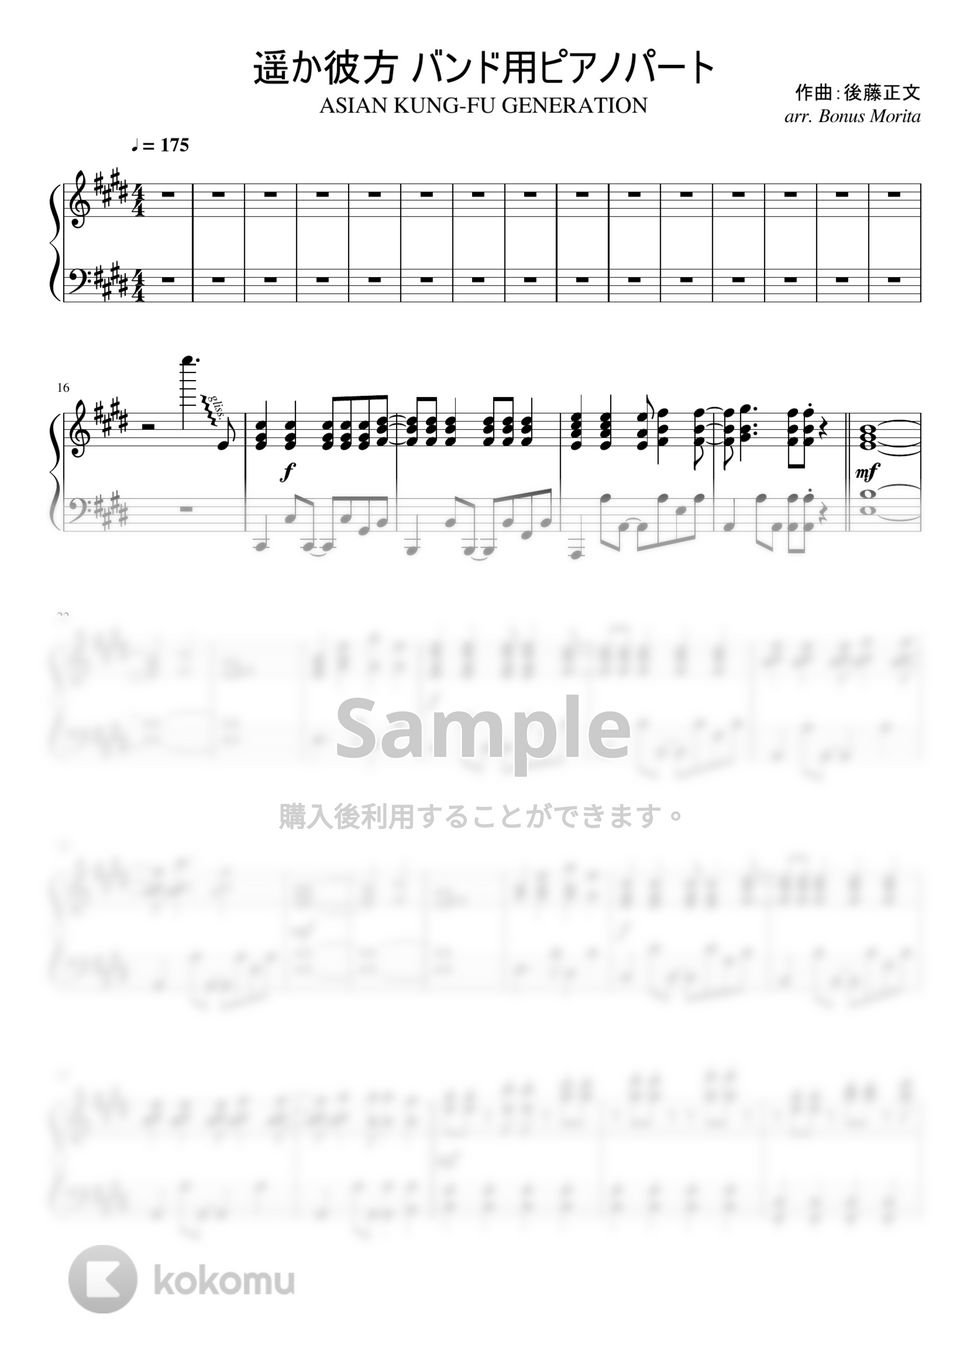 ASIAN KUNG-FU GENERATION - 遥か彼方 (ピアノ楽譜 / バンド用ピアノパート) by ボーナス森田